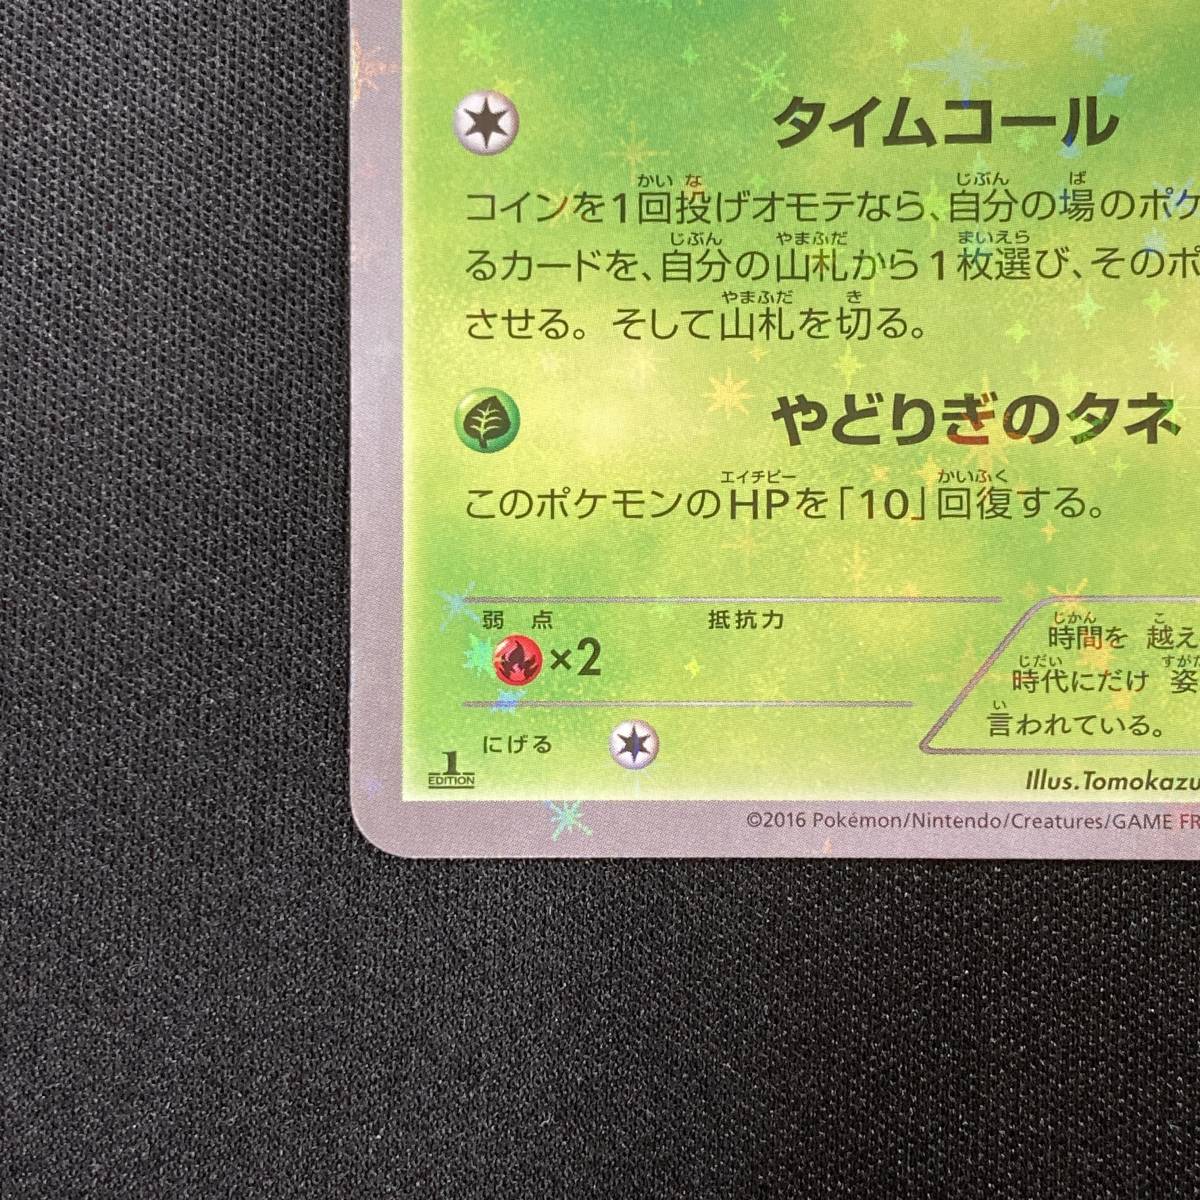 Celebi #001/036 CP5 Pokemon Card 1st Edition Holo Japanese 2016 セレビィ ポケモン カード タイムコール ホロ_画像6